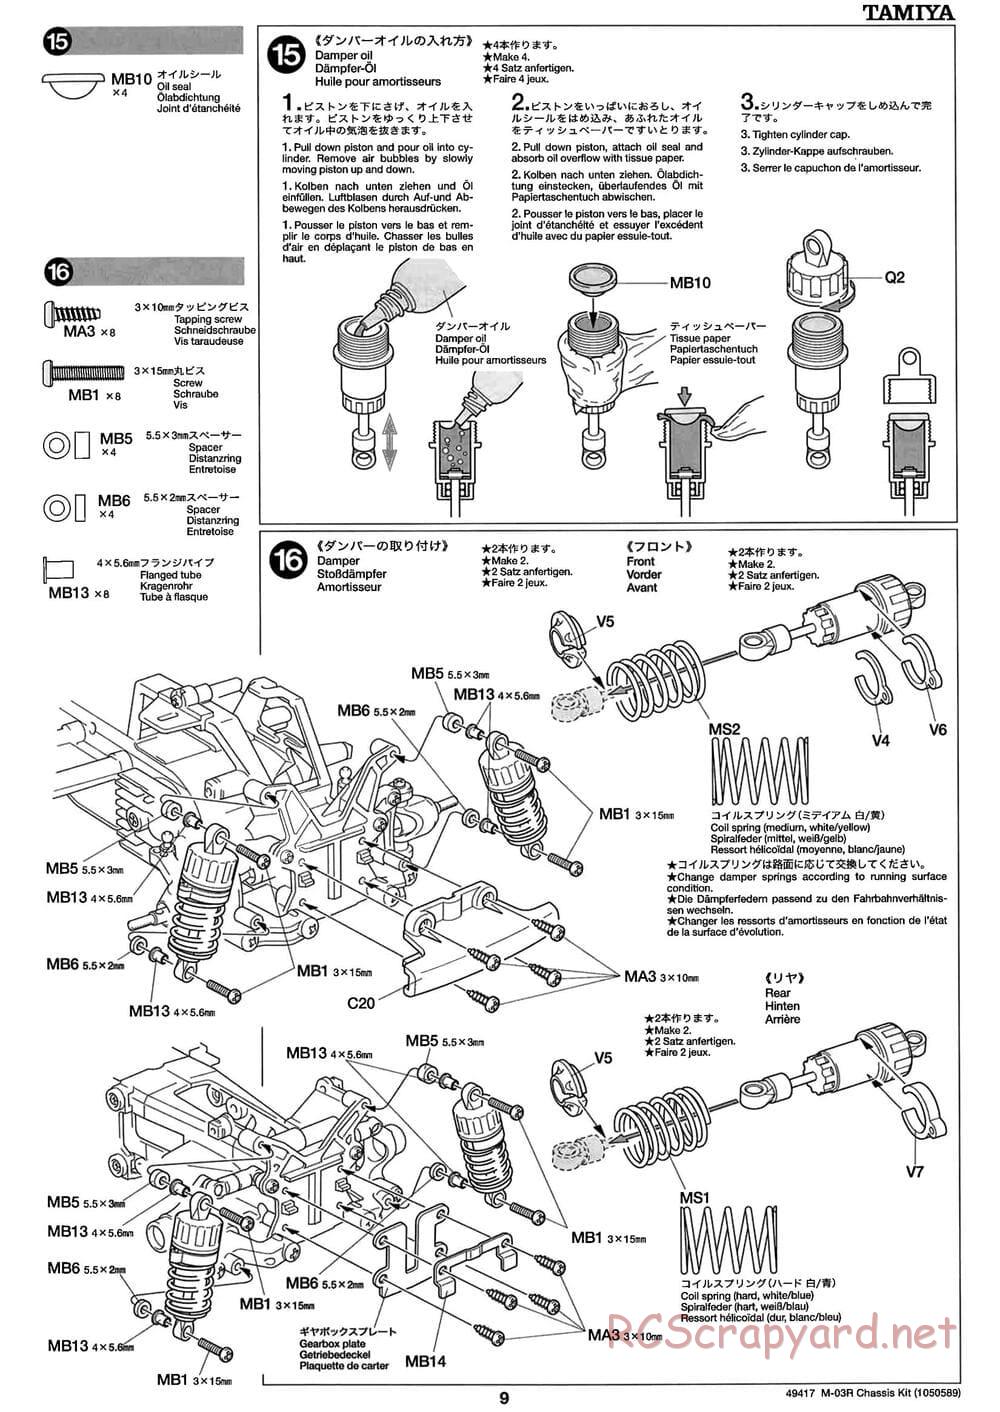 Tamiya - M-03R Chassis - Manual - Page 9